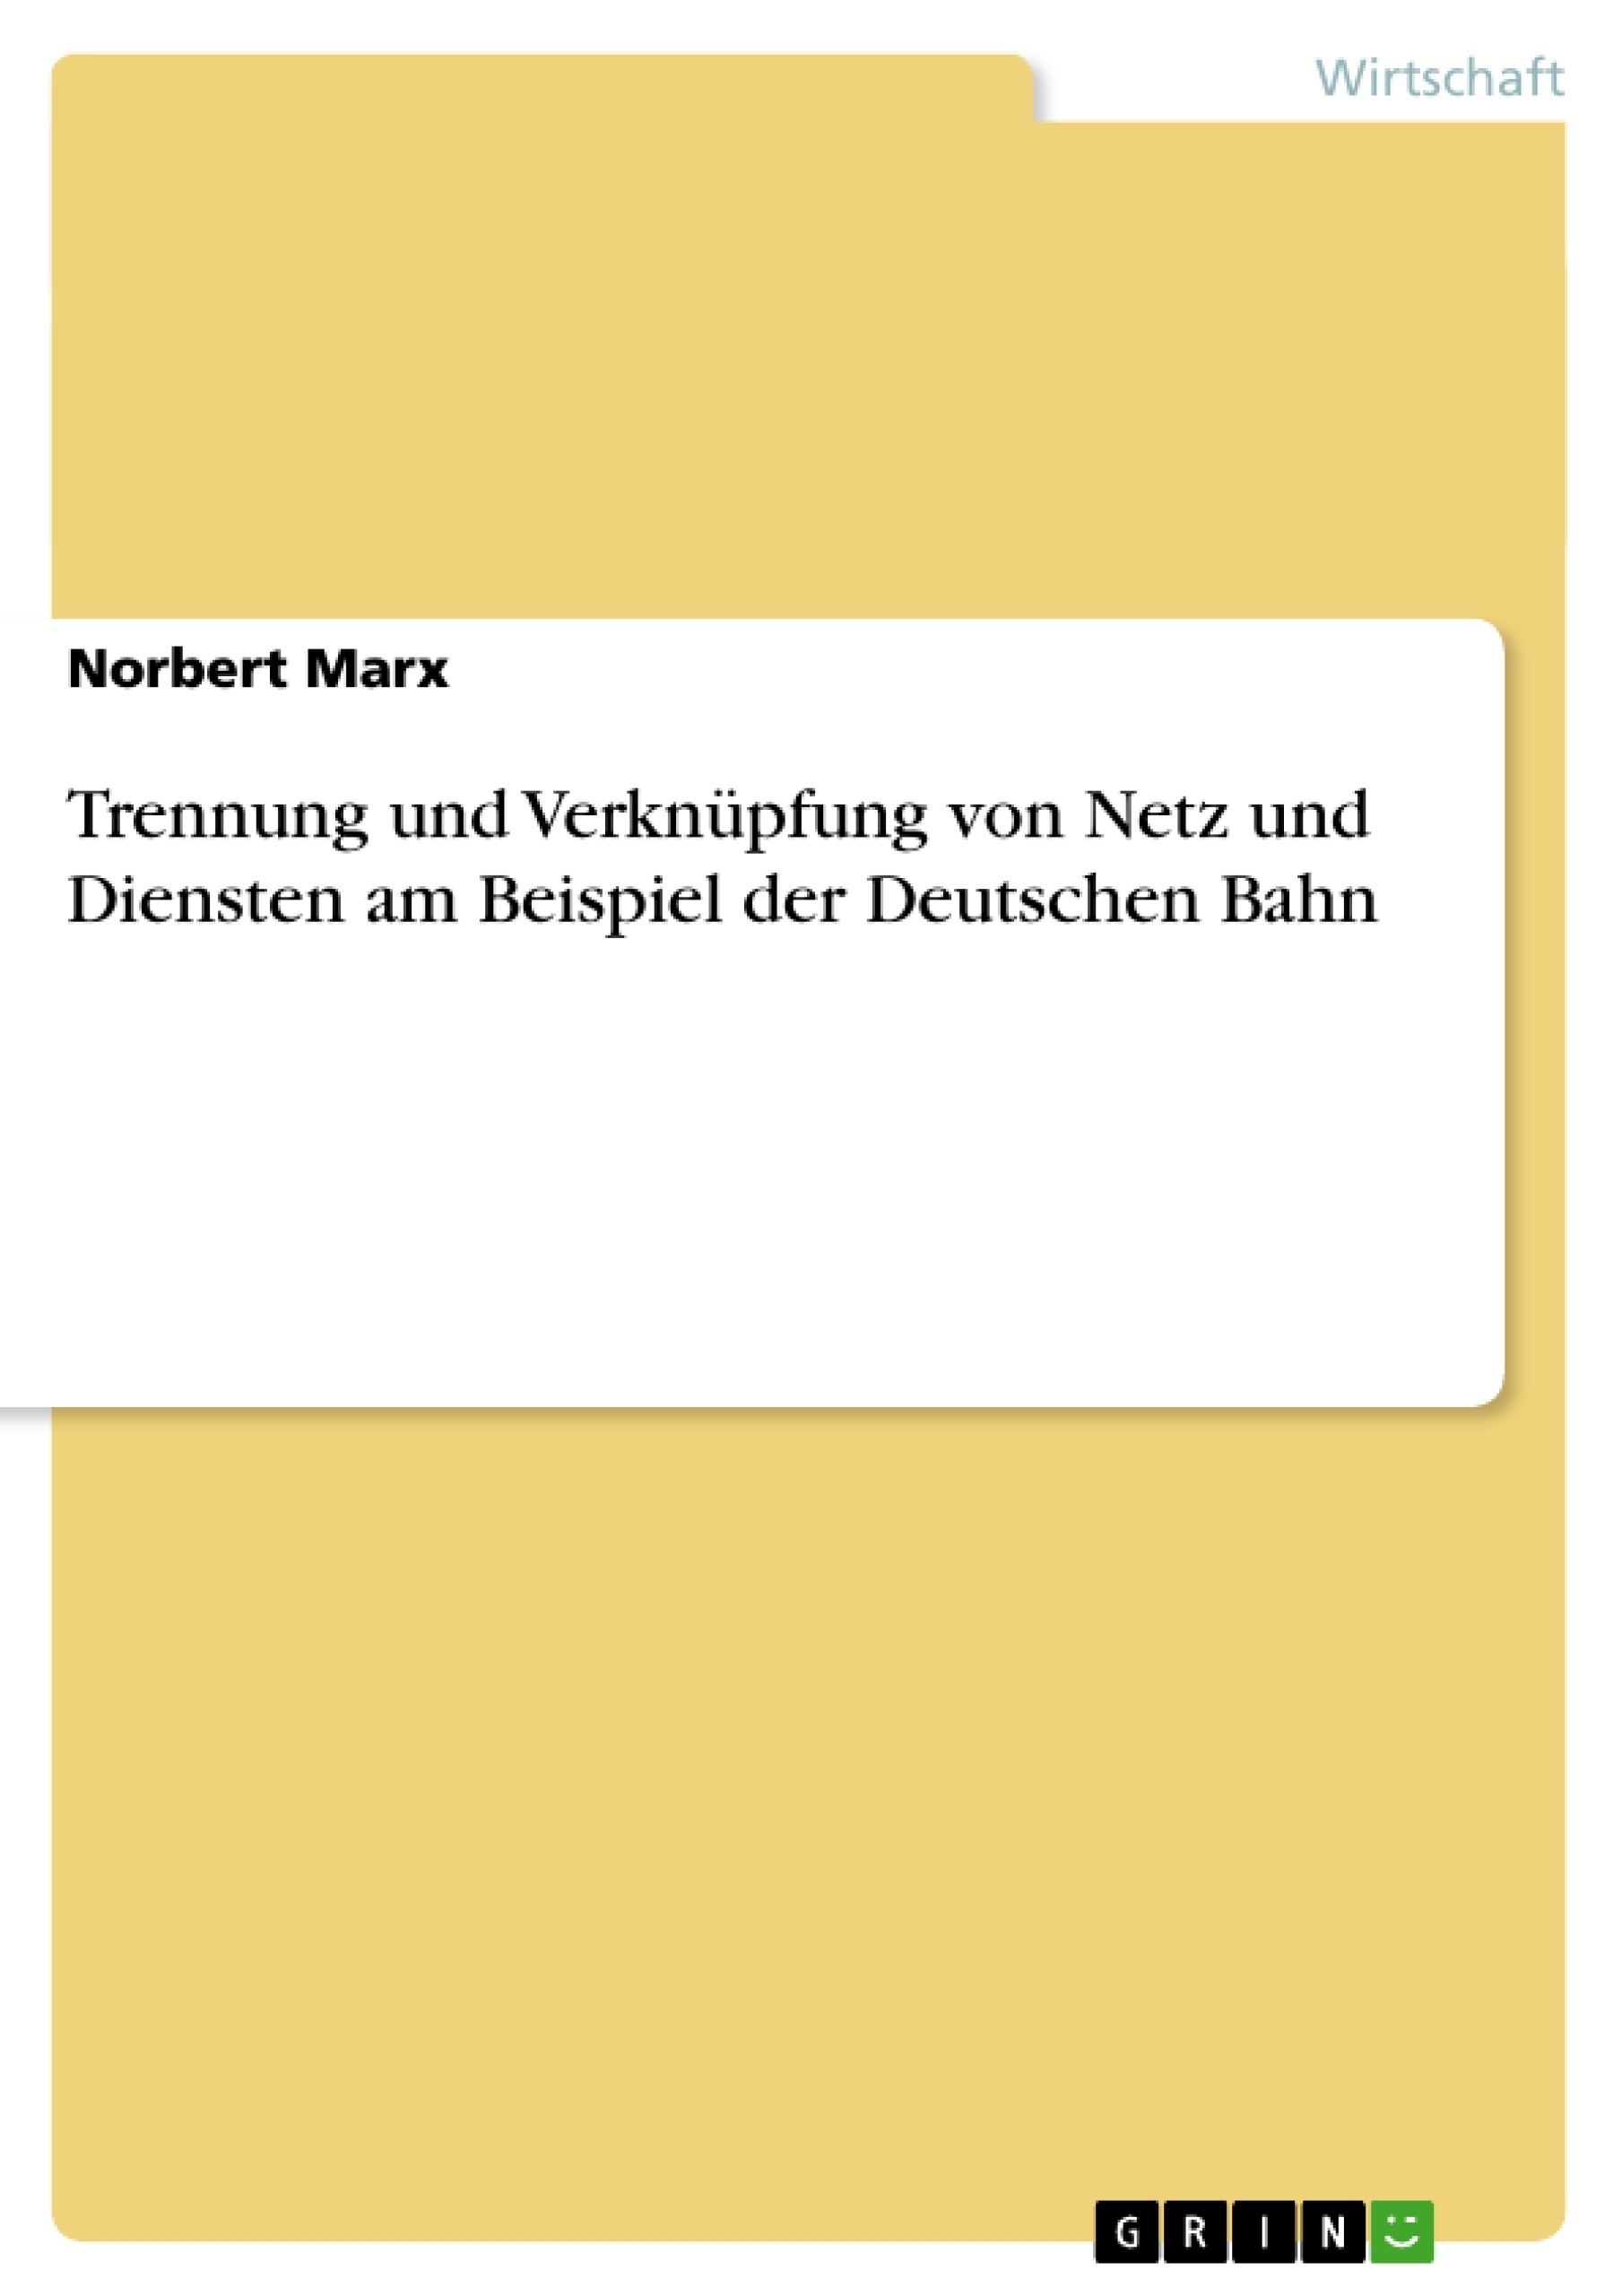 Título: Trennung und Verknüpfung von Netz und Diensten am Beispiel der Deutschen Bahn